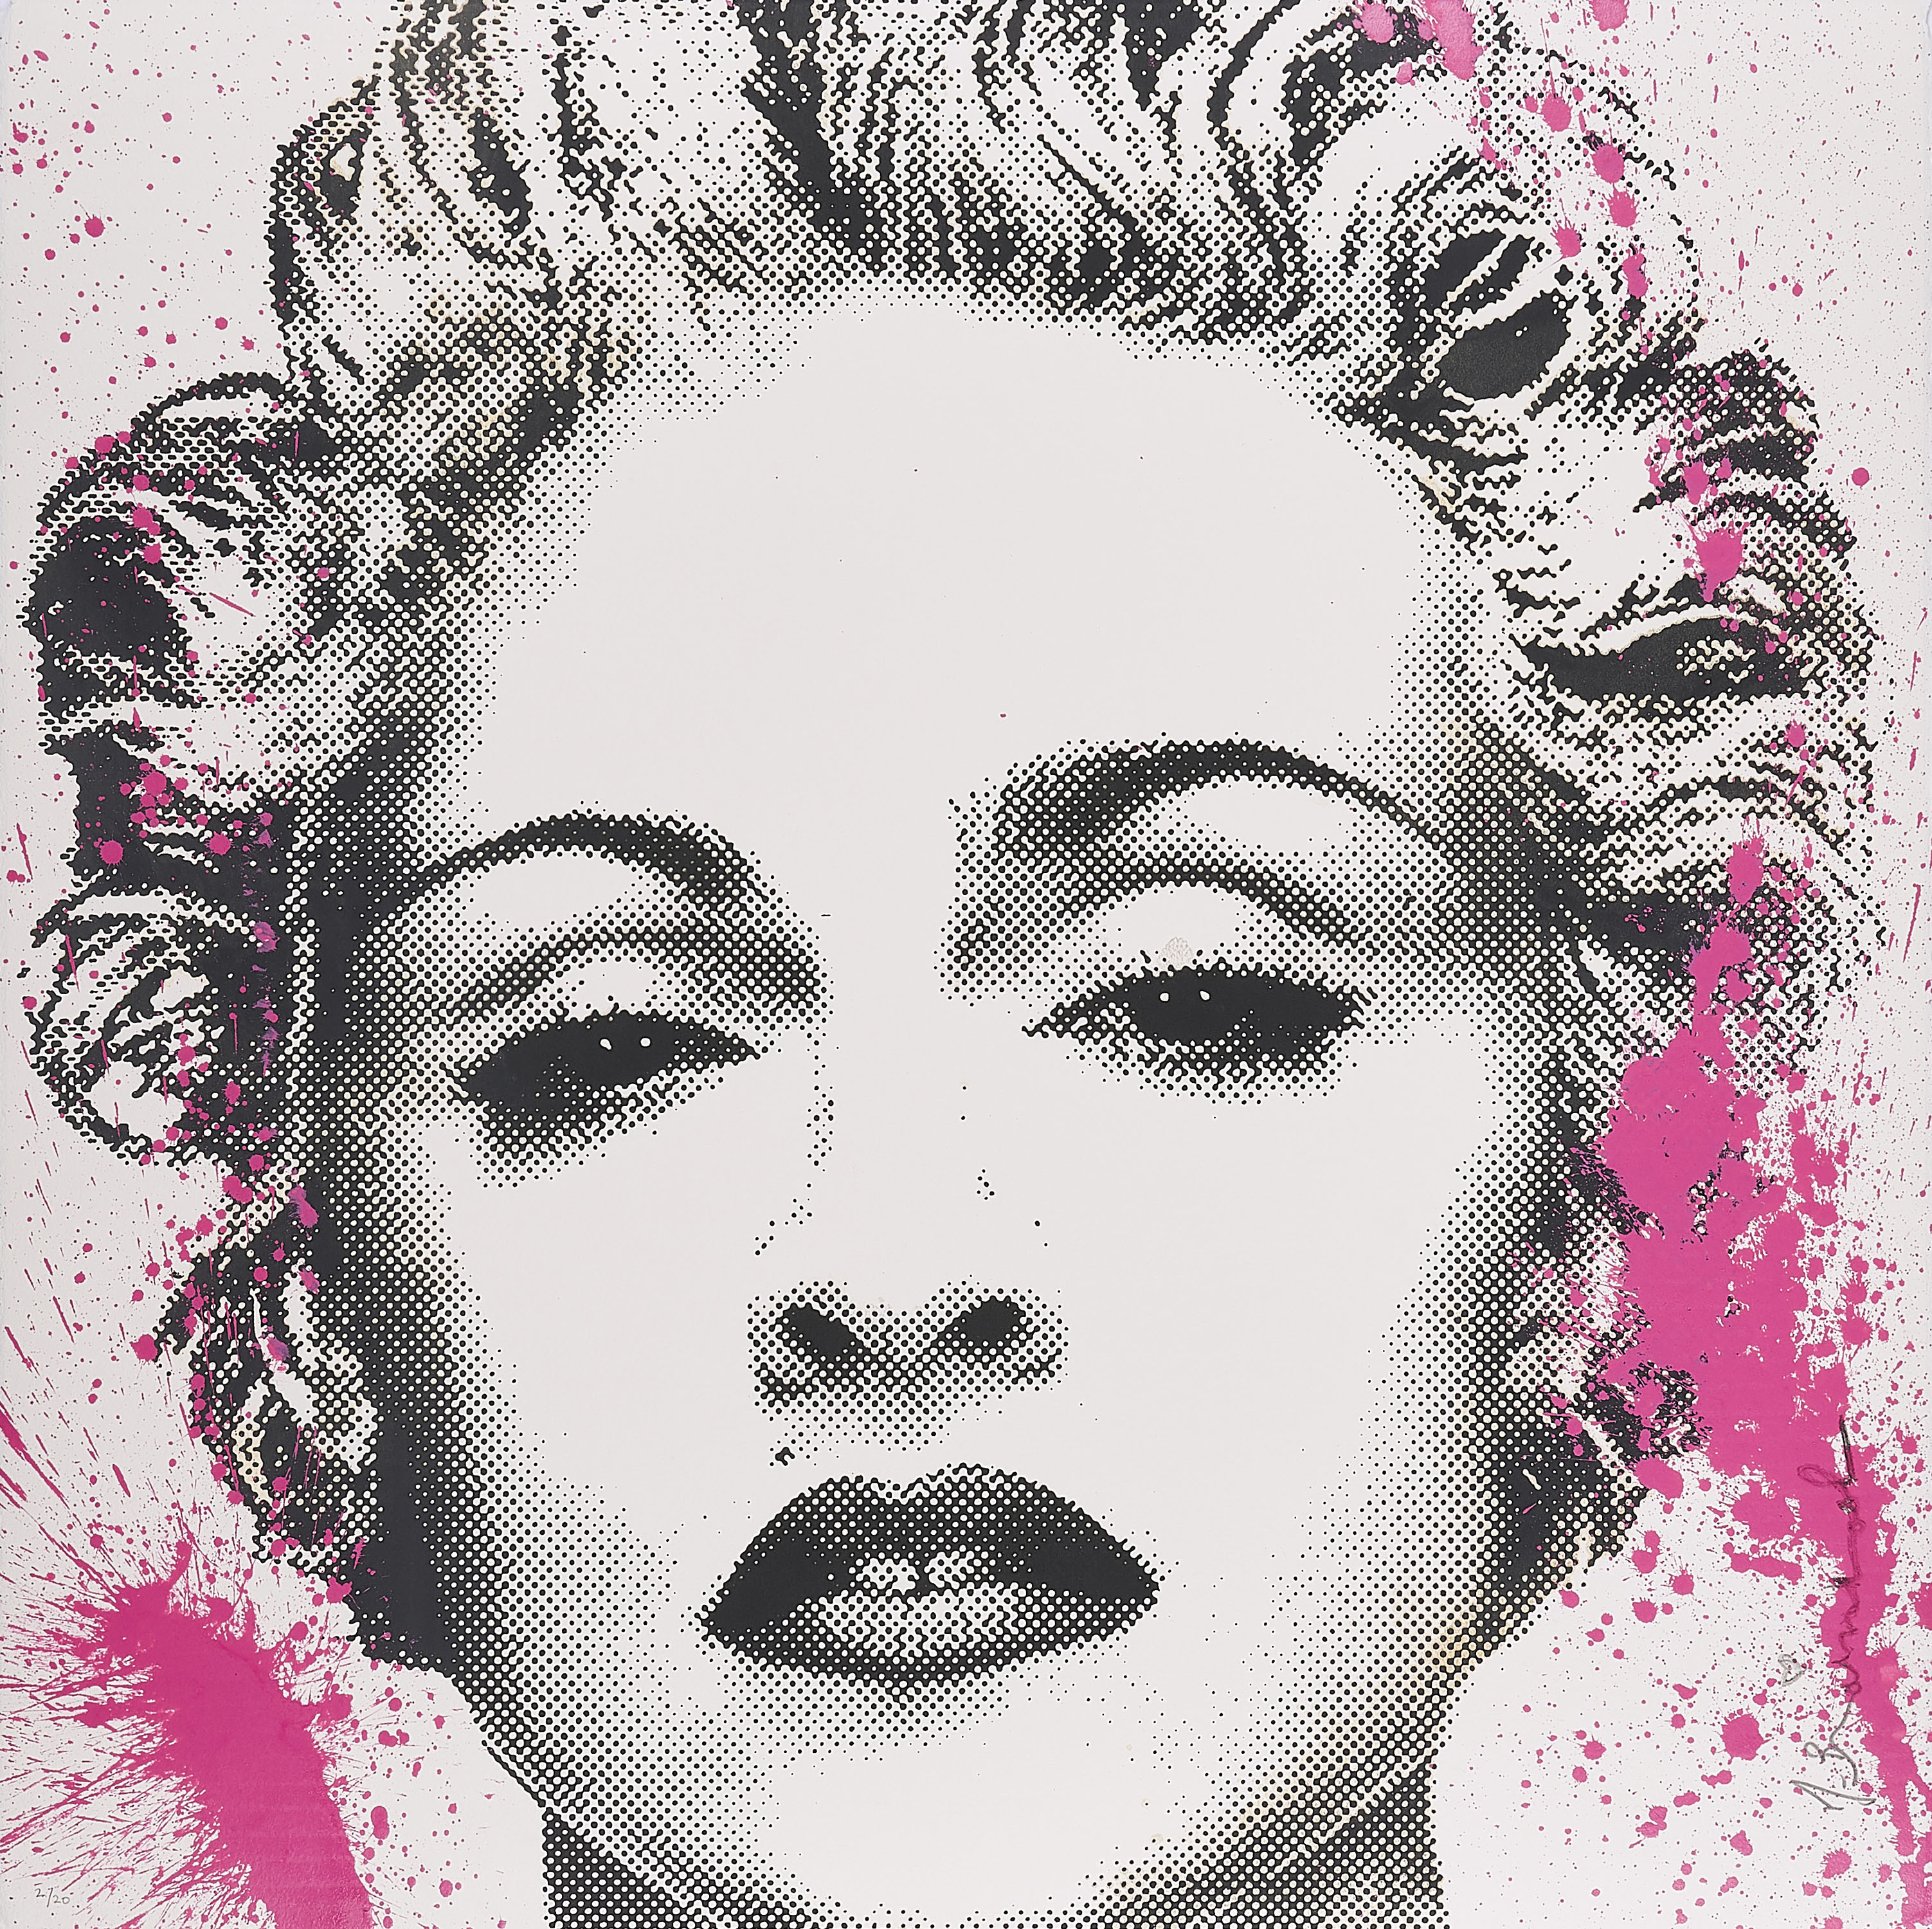 Mr Brainwash Tierry Guetta - Madonna, 75087-19, Van Ham Kunstauktionen